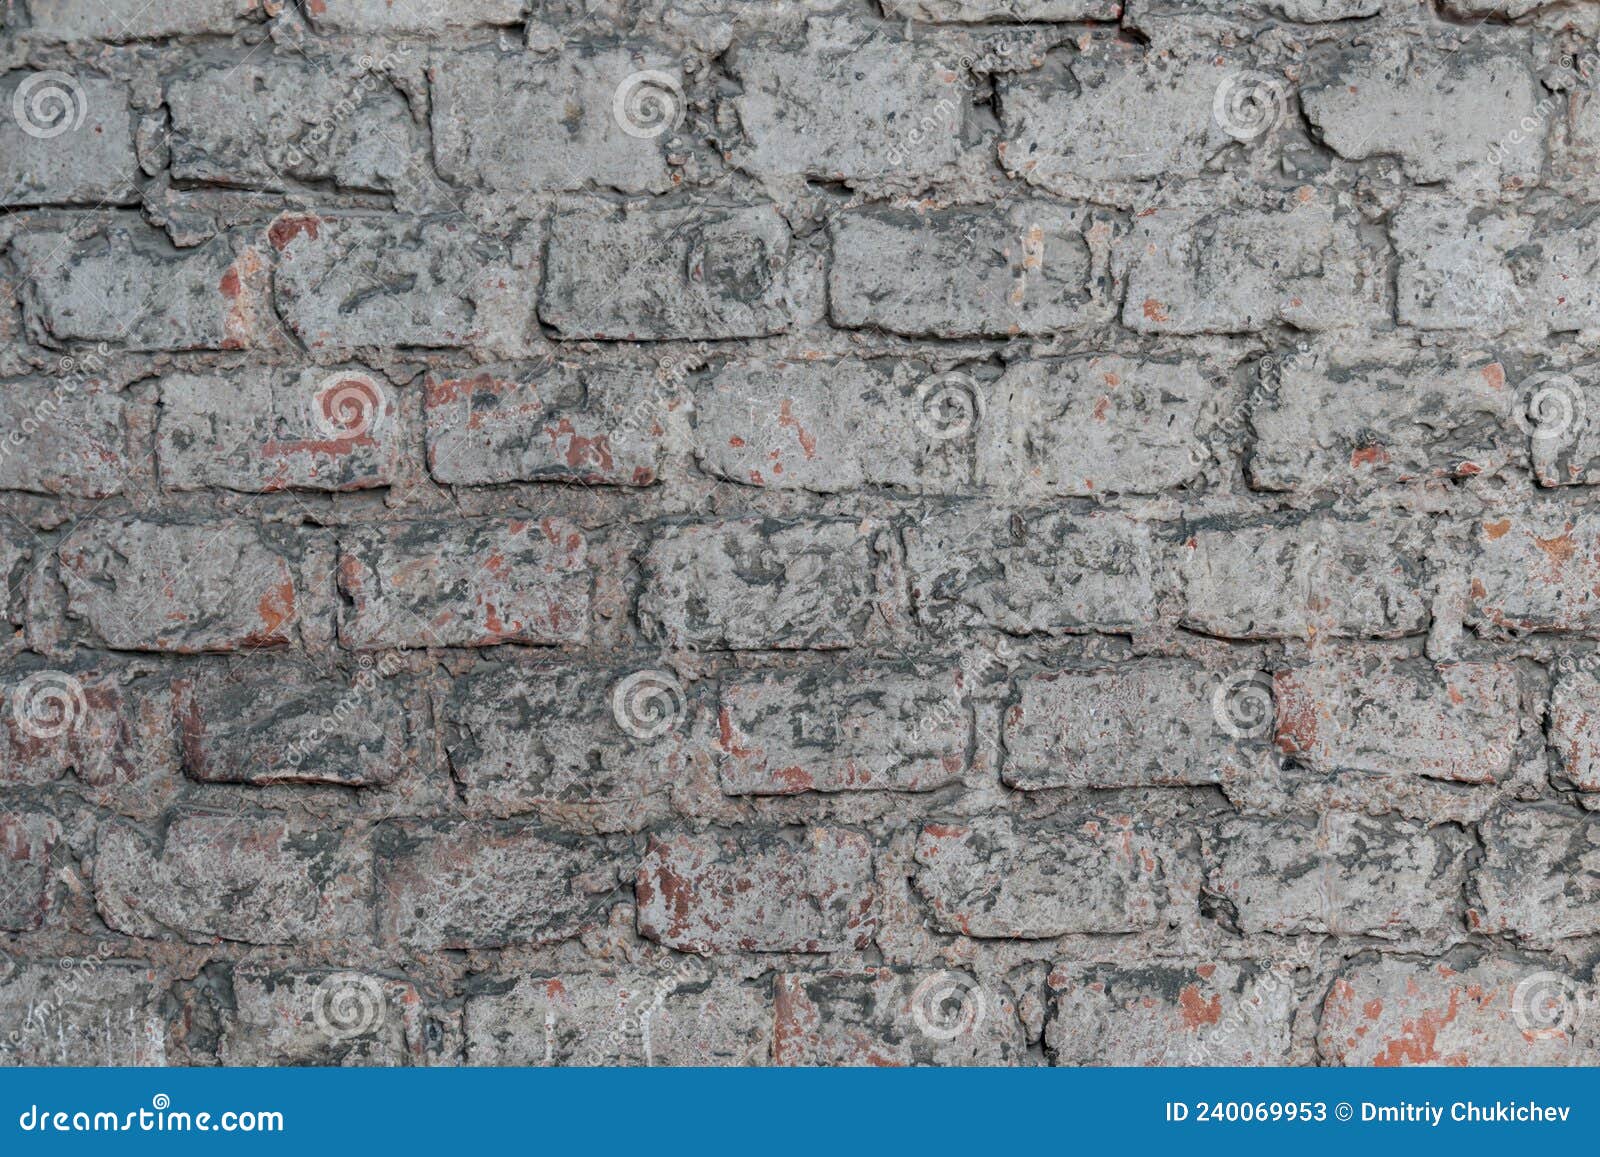 我家墙砖铺贴施工正在进行中-监理日记-上海装潢网